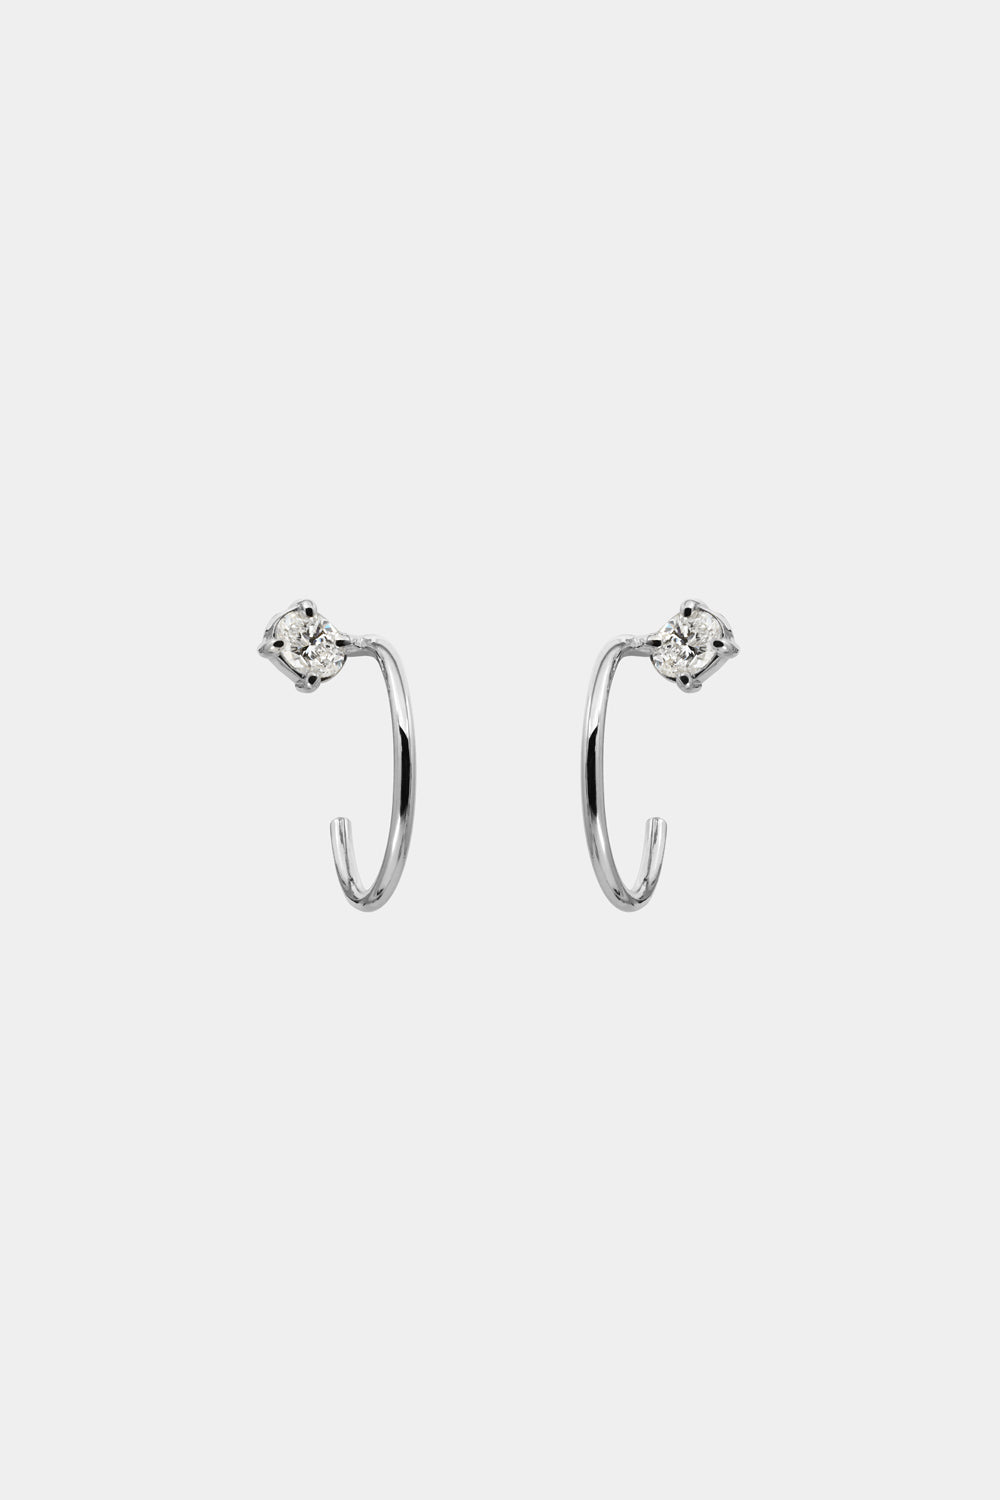 Mini Lara Oval Diamond Hoop Earrings | 18K White Gold